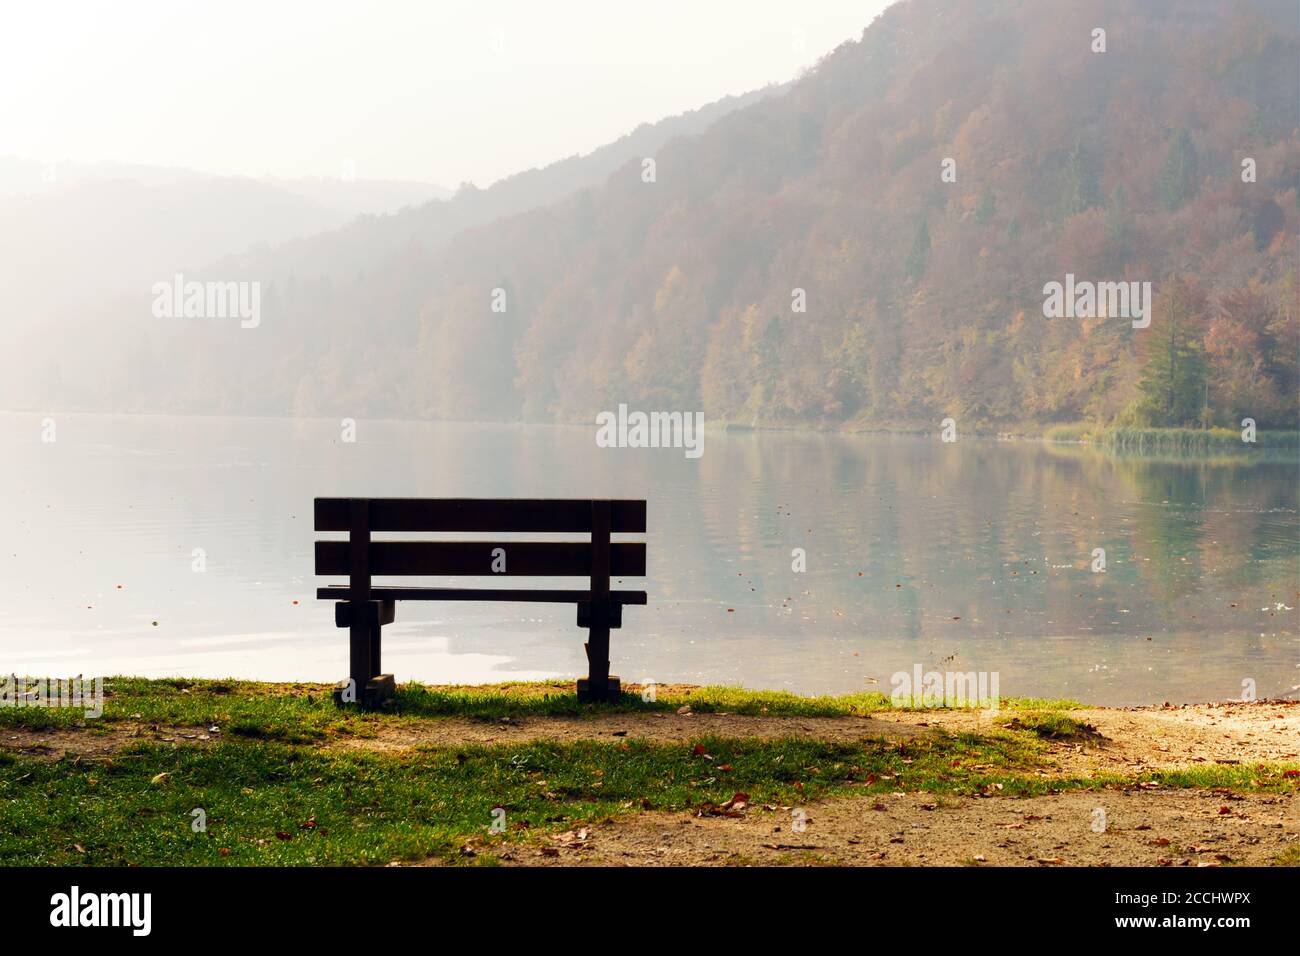 Brume matinale sur les incroyables lacs de Plitvice. Banc en bois sur la côte du lac. Parc national de Plitvice, Croatie. Photographie de paysage Banque D'Images